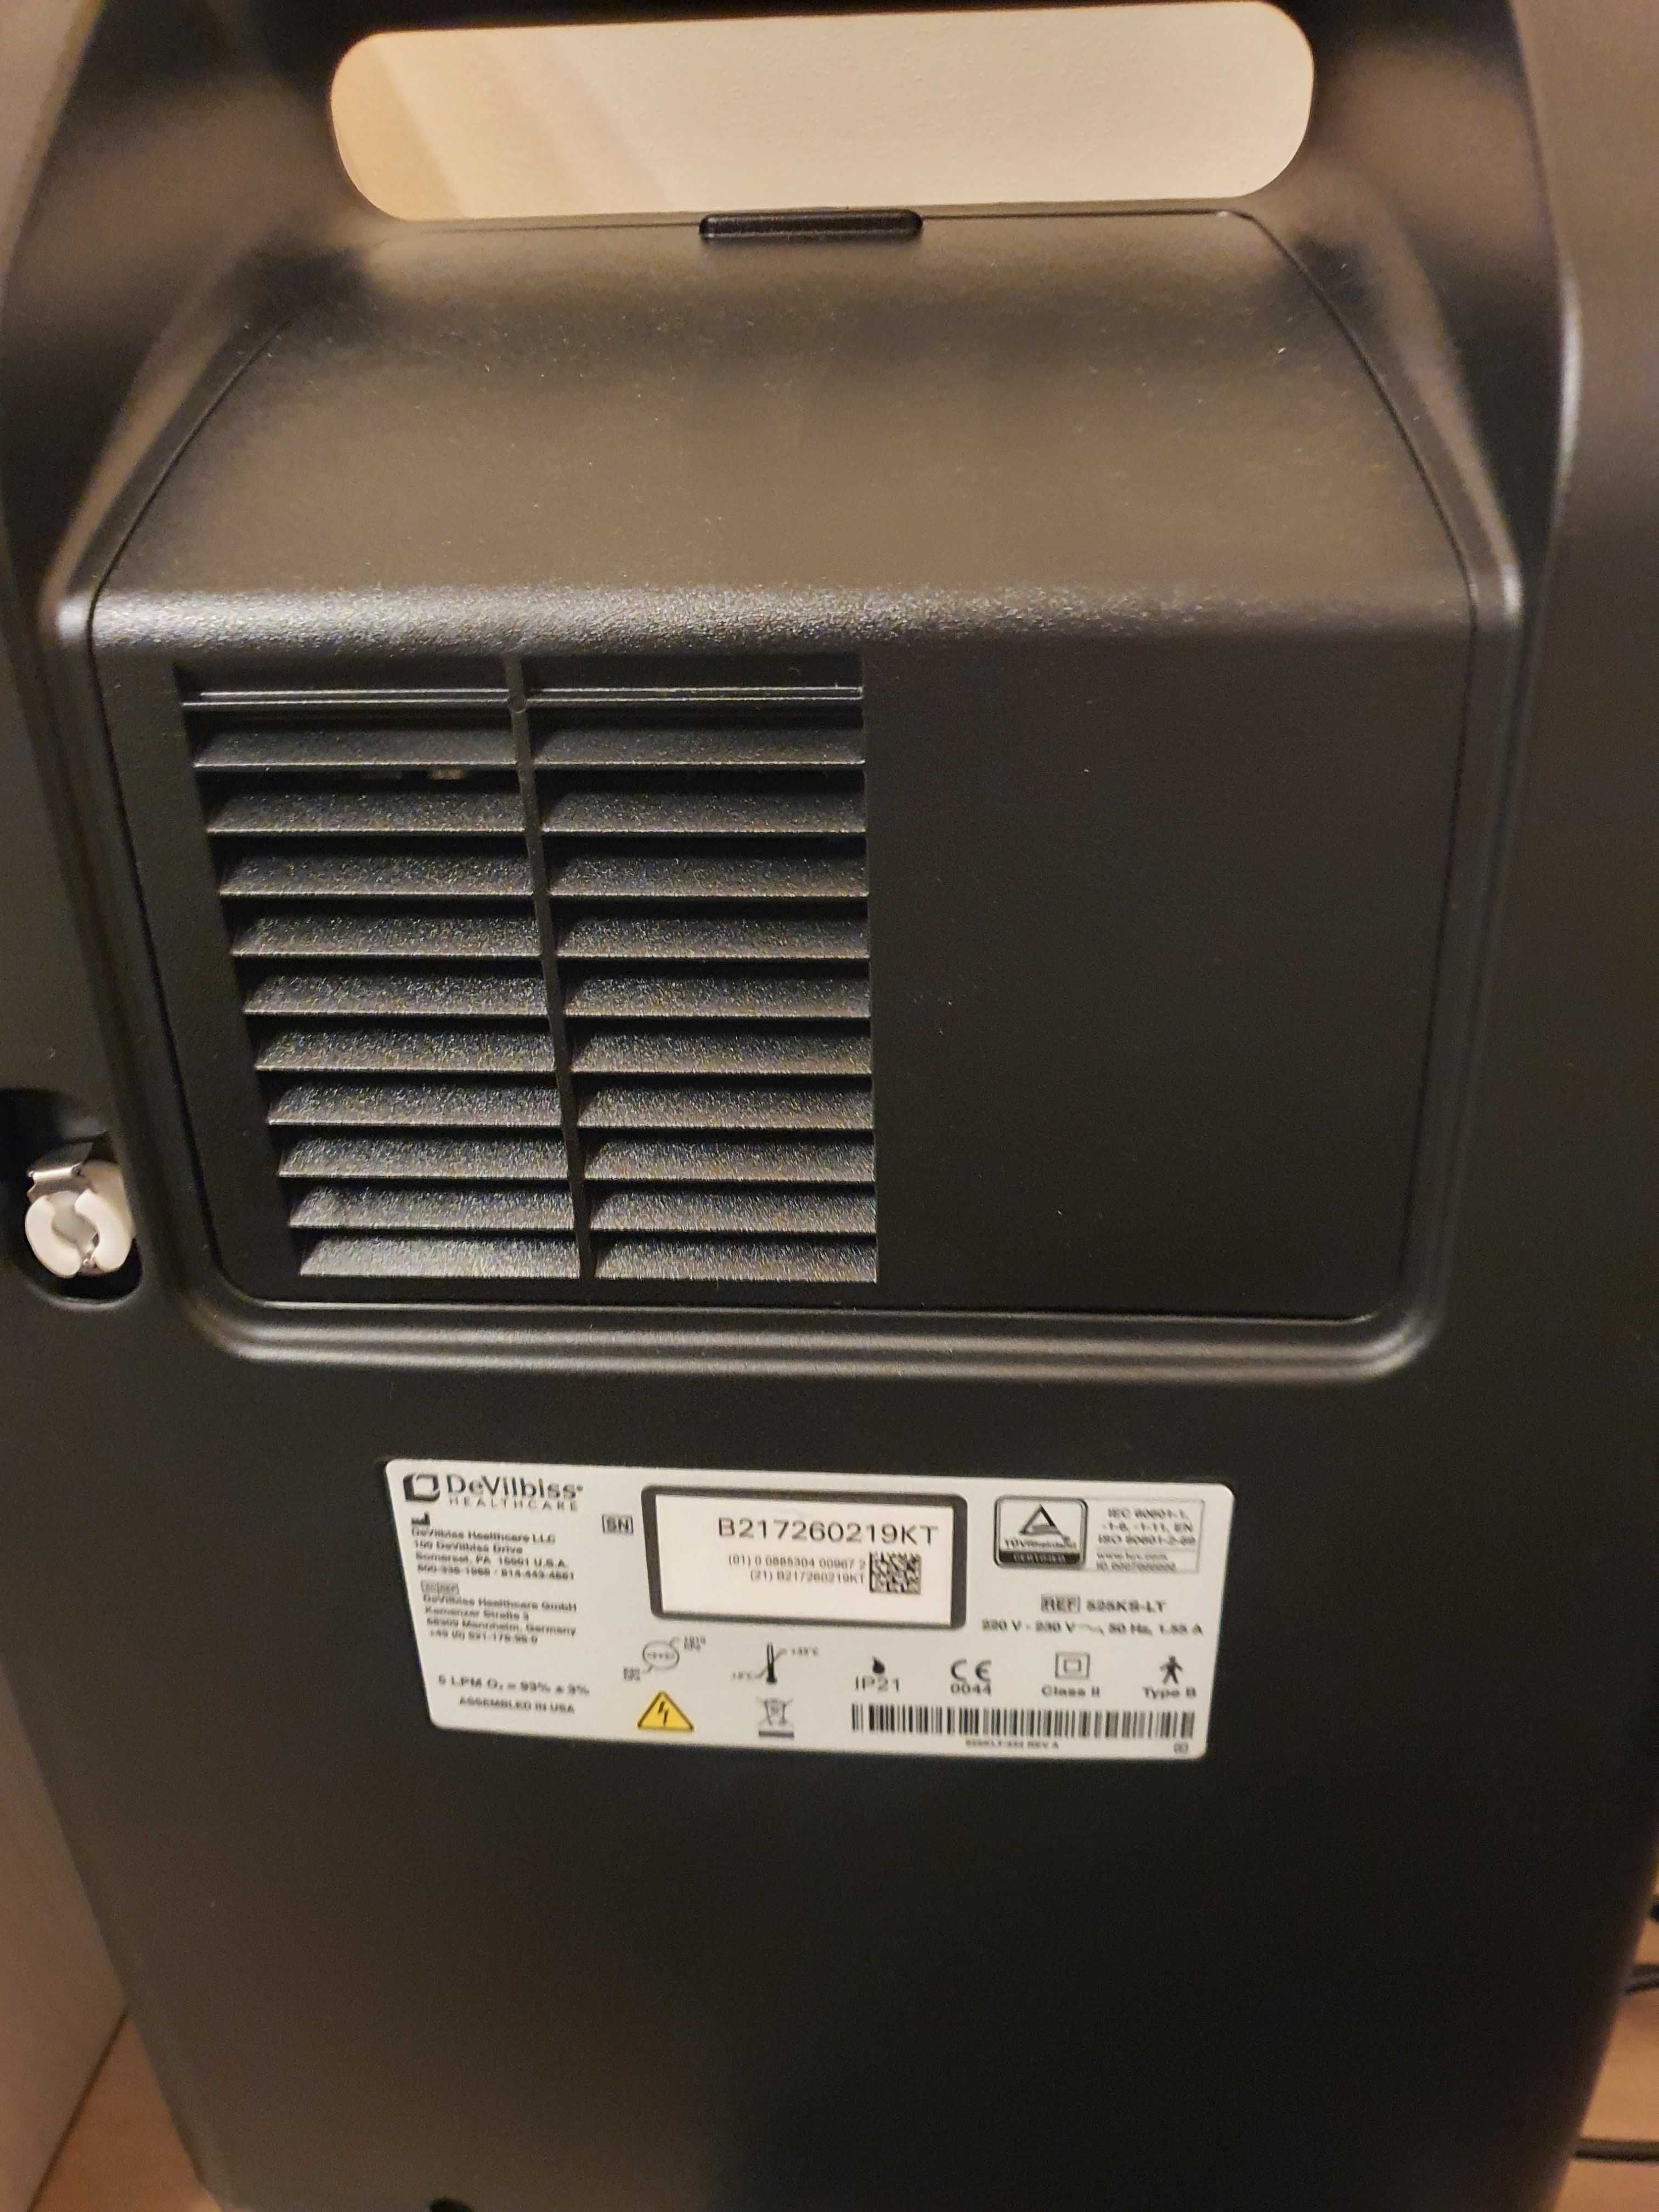 Concentrator Oxigen DeVilbiss 5 litrii 525KS-LT